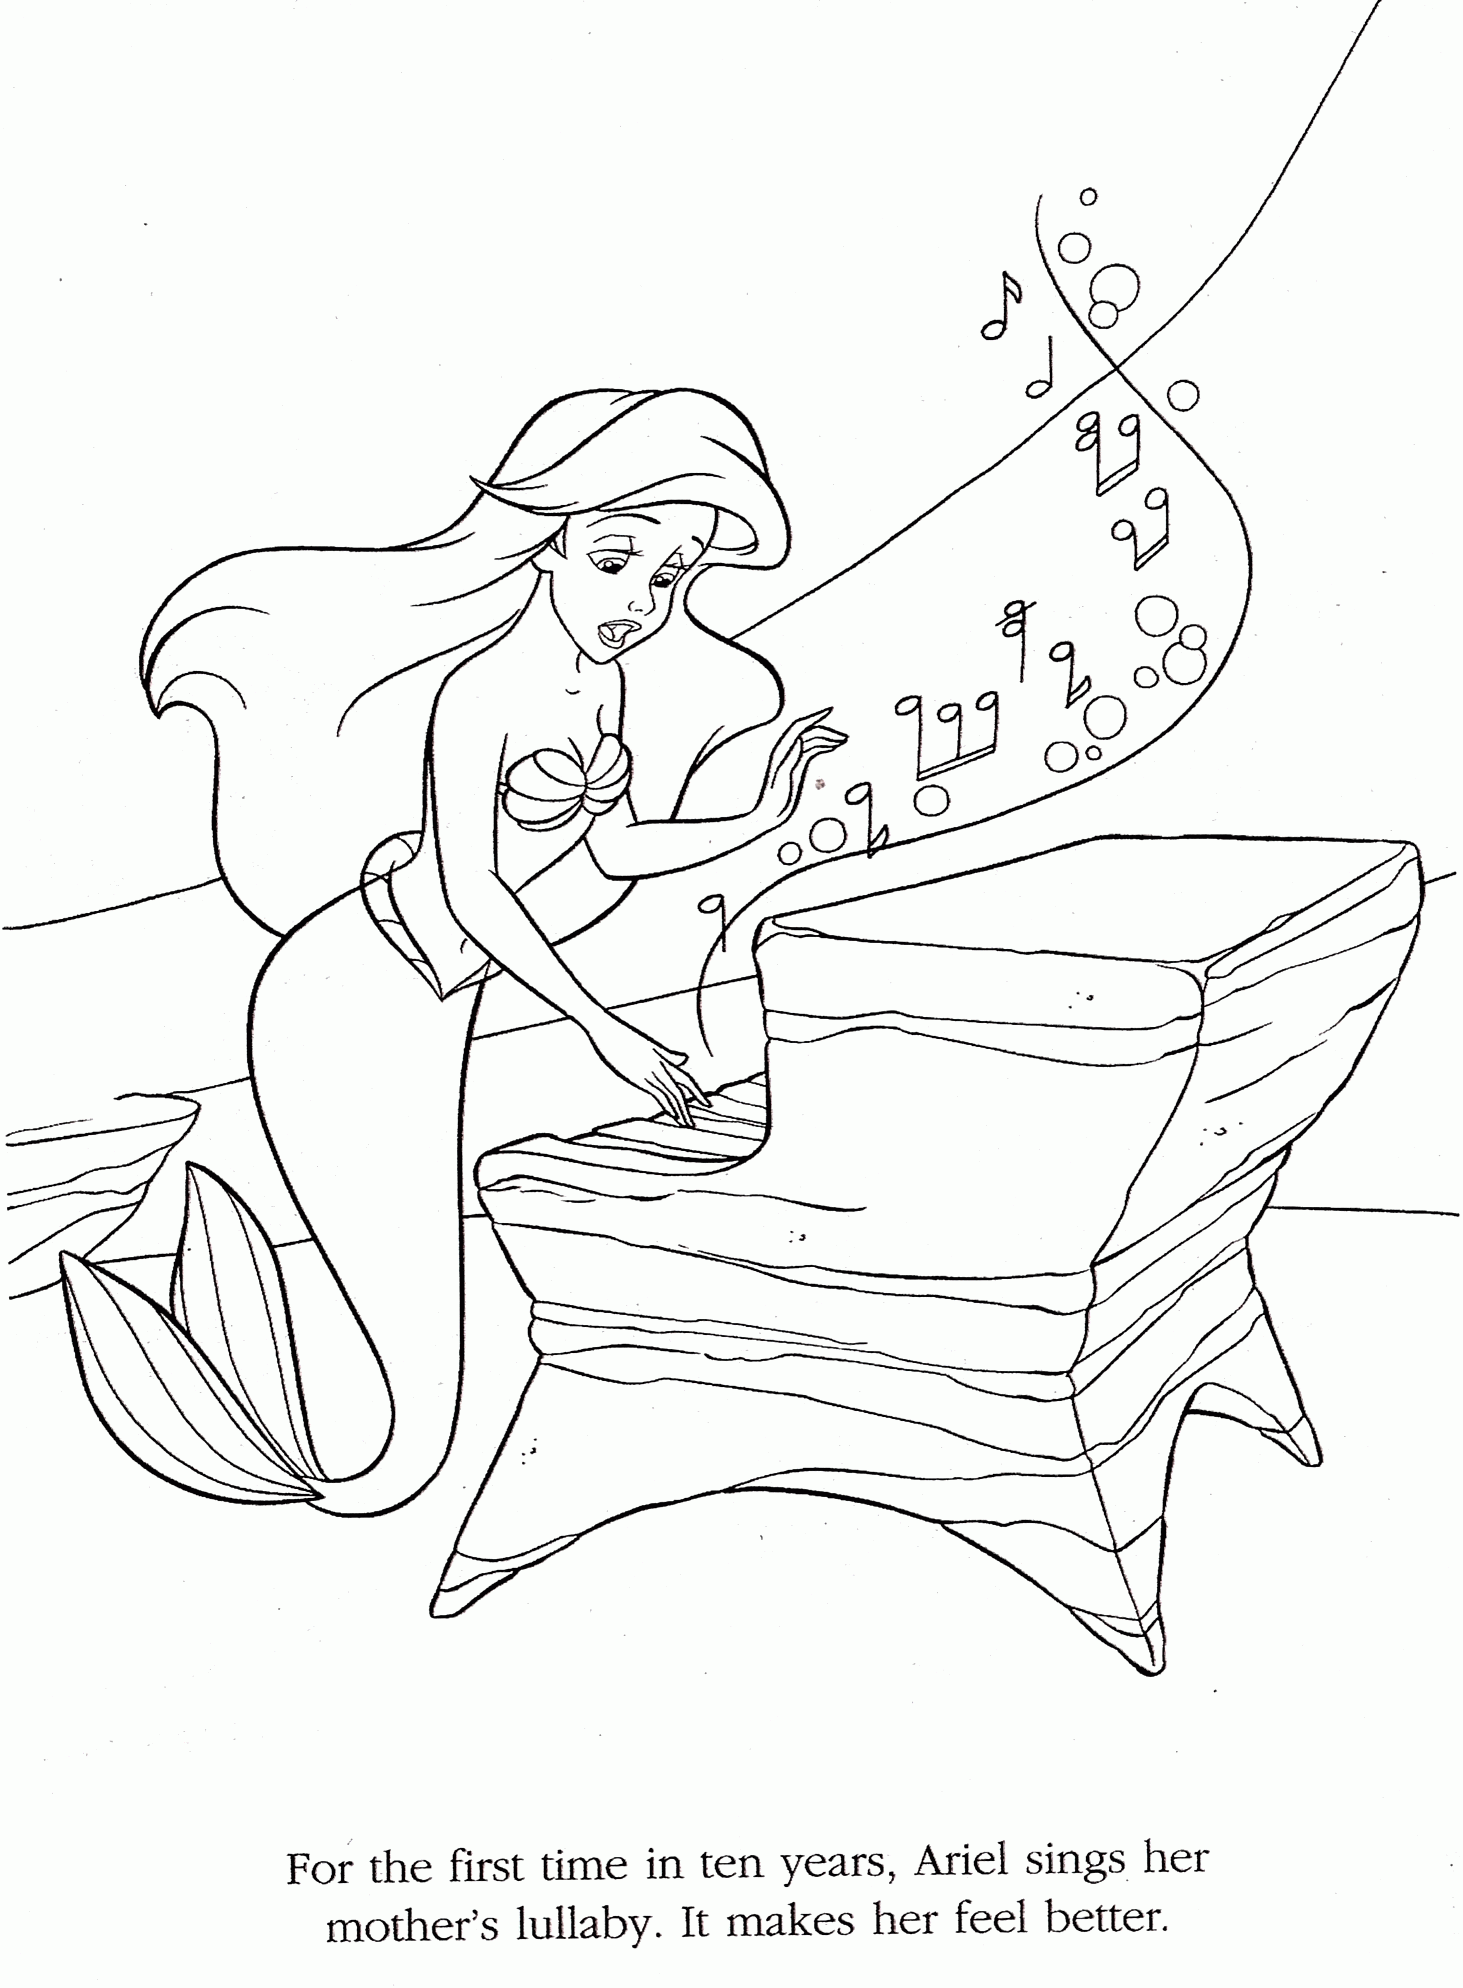 Kolorowanka syrenka Ariel śpiewa swojej mamie kołysankę grając na pianinie pod wodą